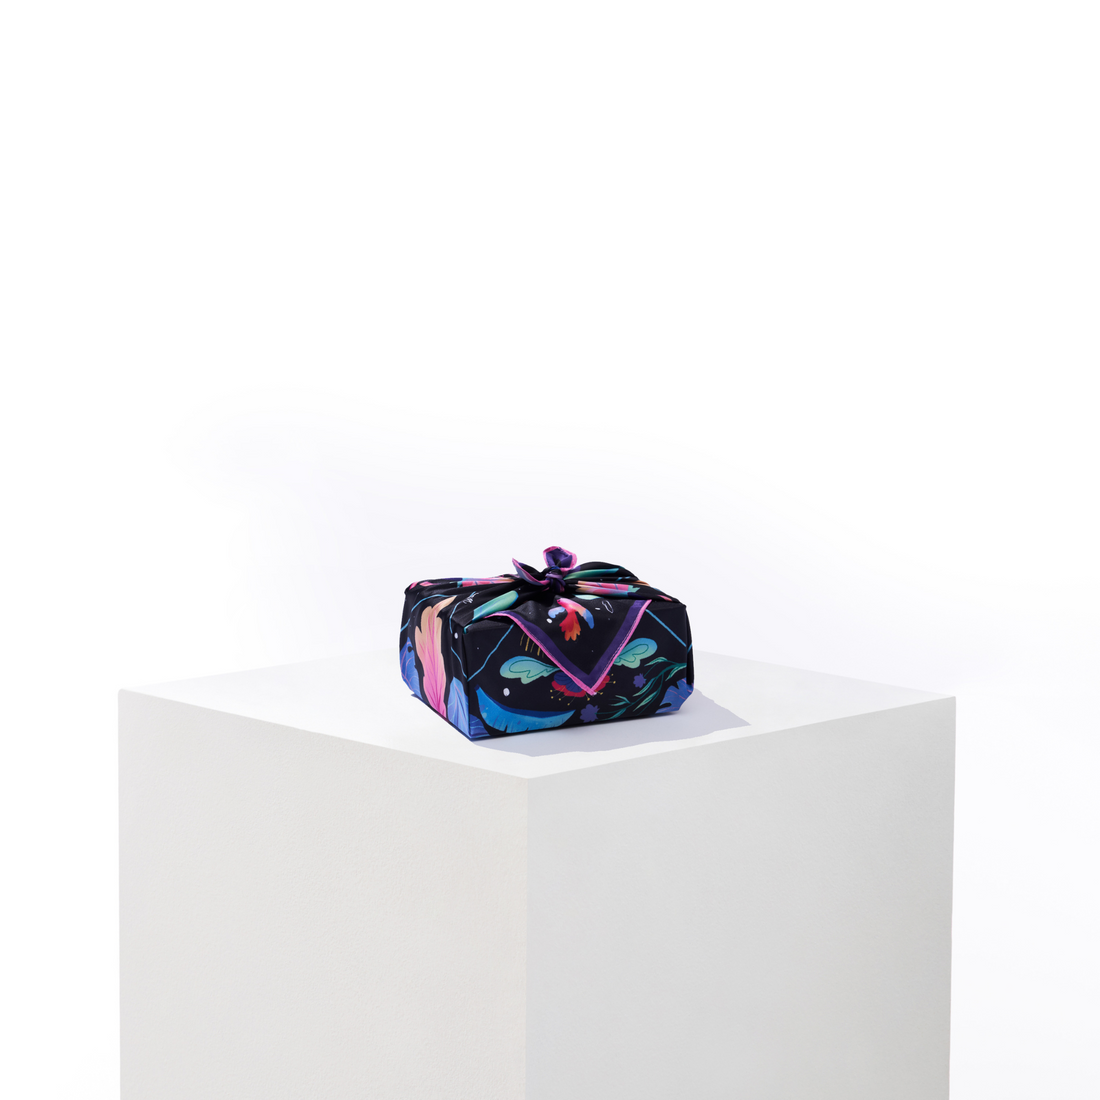 Limitless | 18" Furoshiki Gift Wrap by Nina Ramos